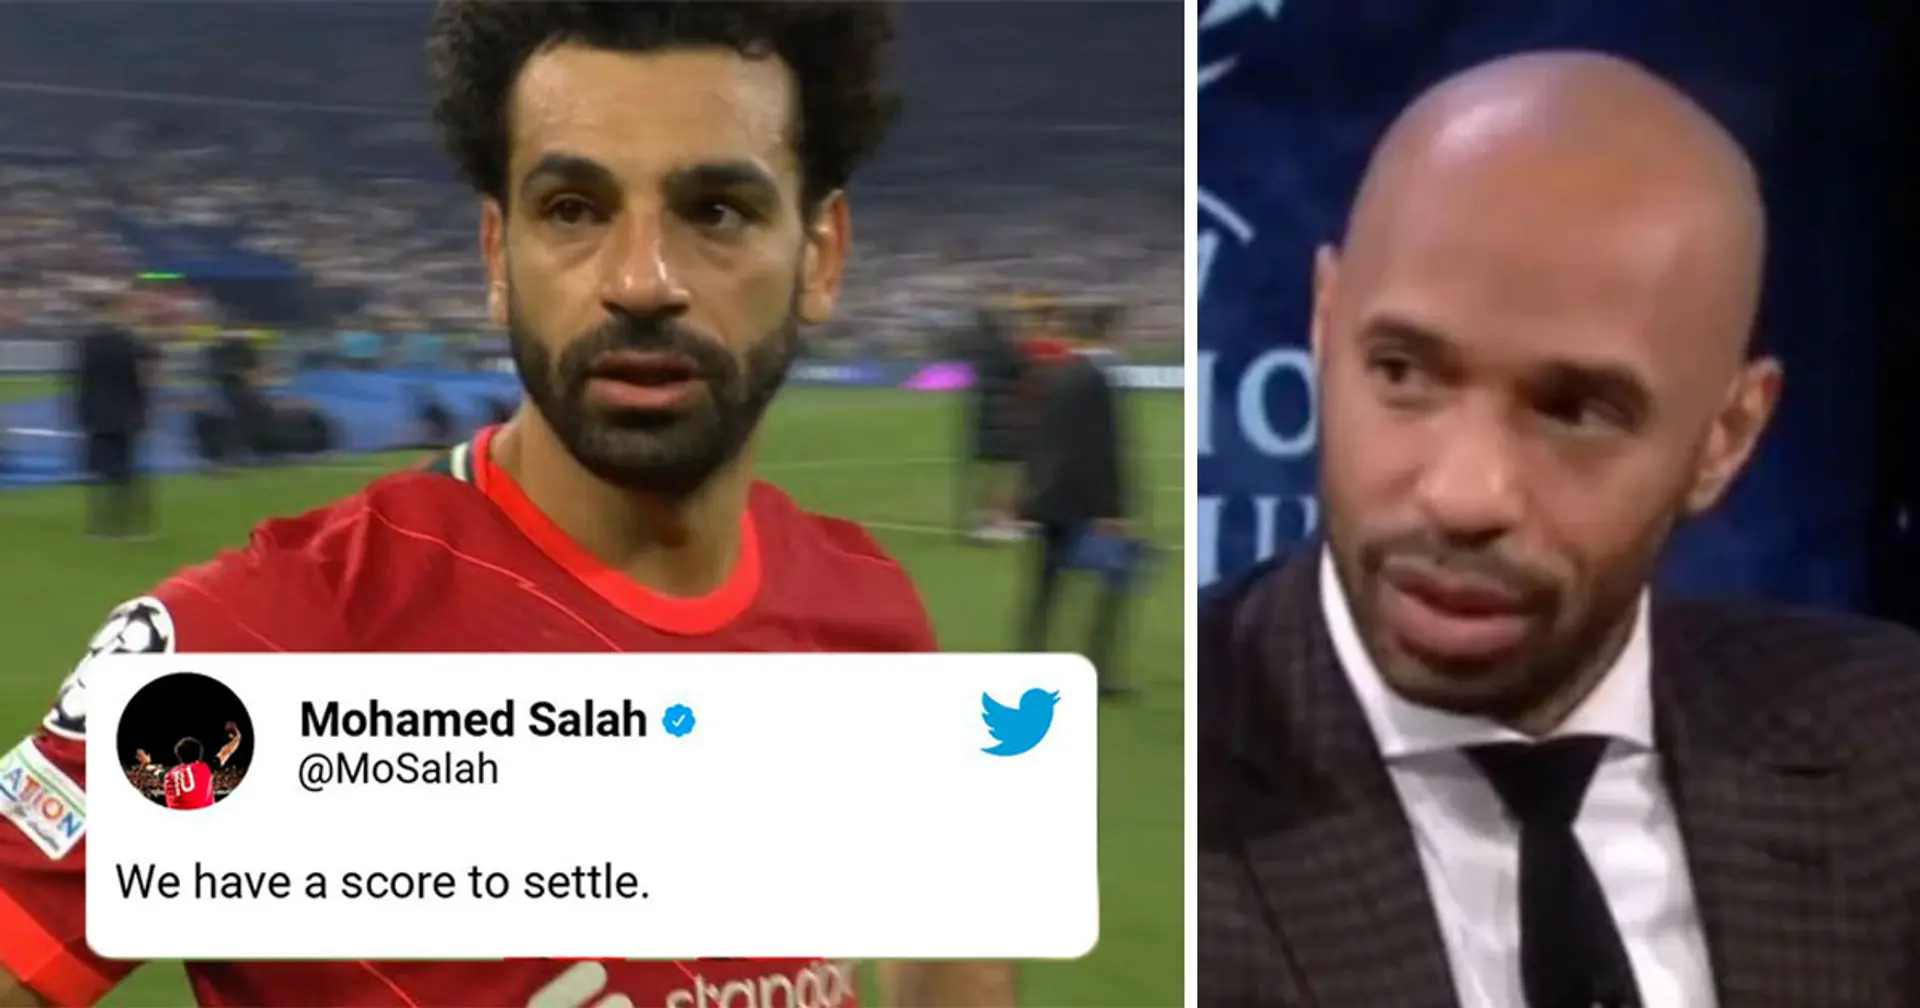 "Du hättest diese Dinge nicht sagen sollen": Henry kritisiert Salah wegen "Rachezeit"-Auusagen